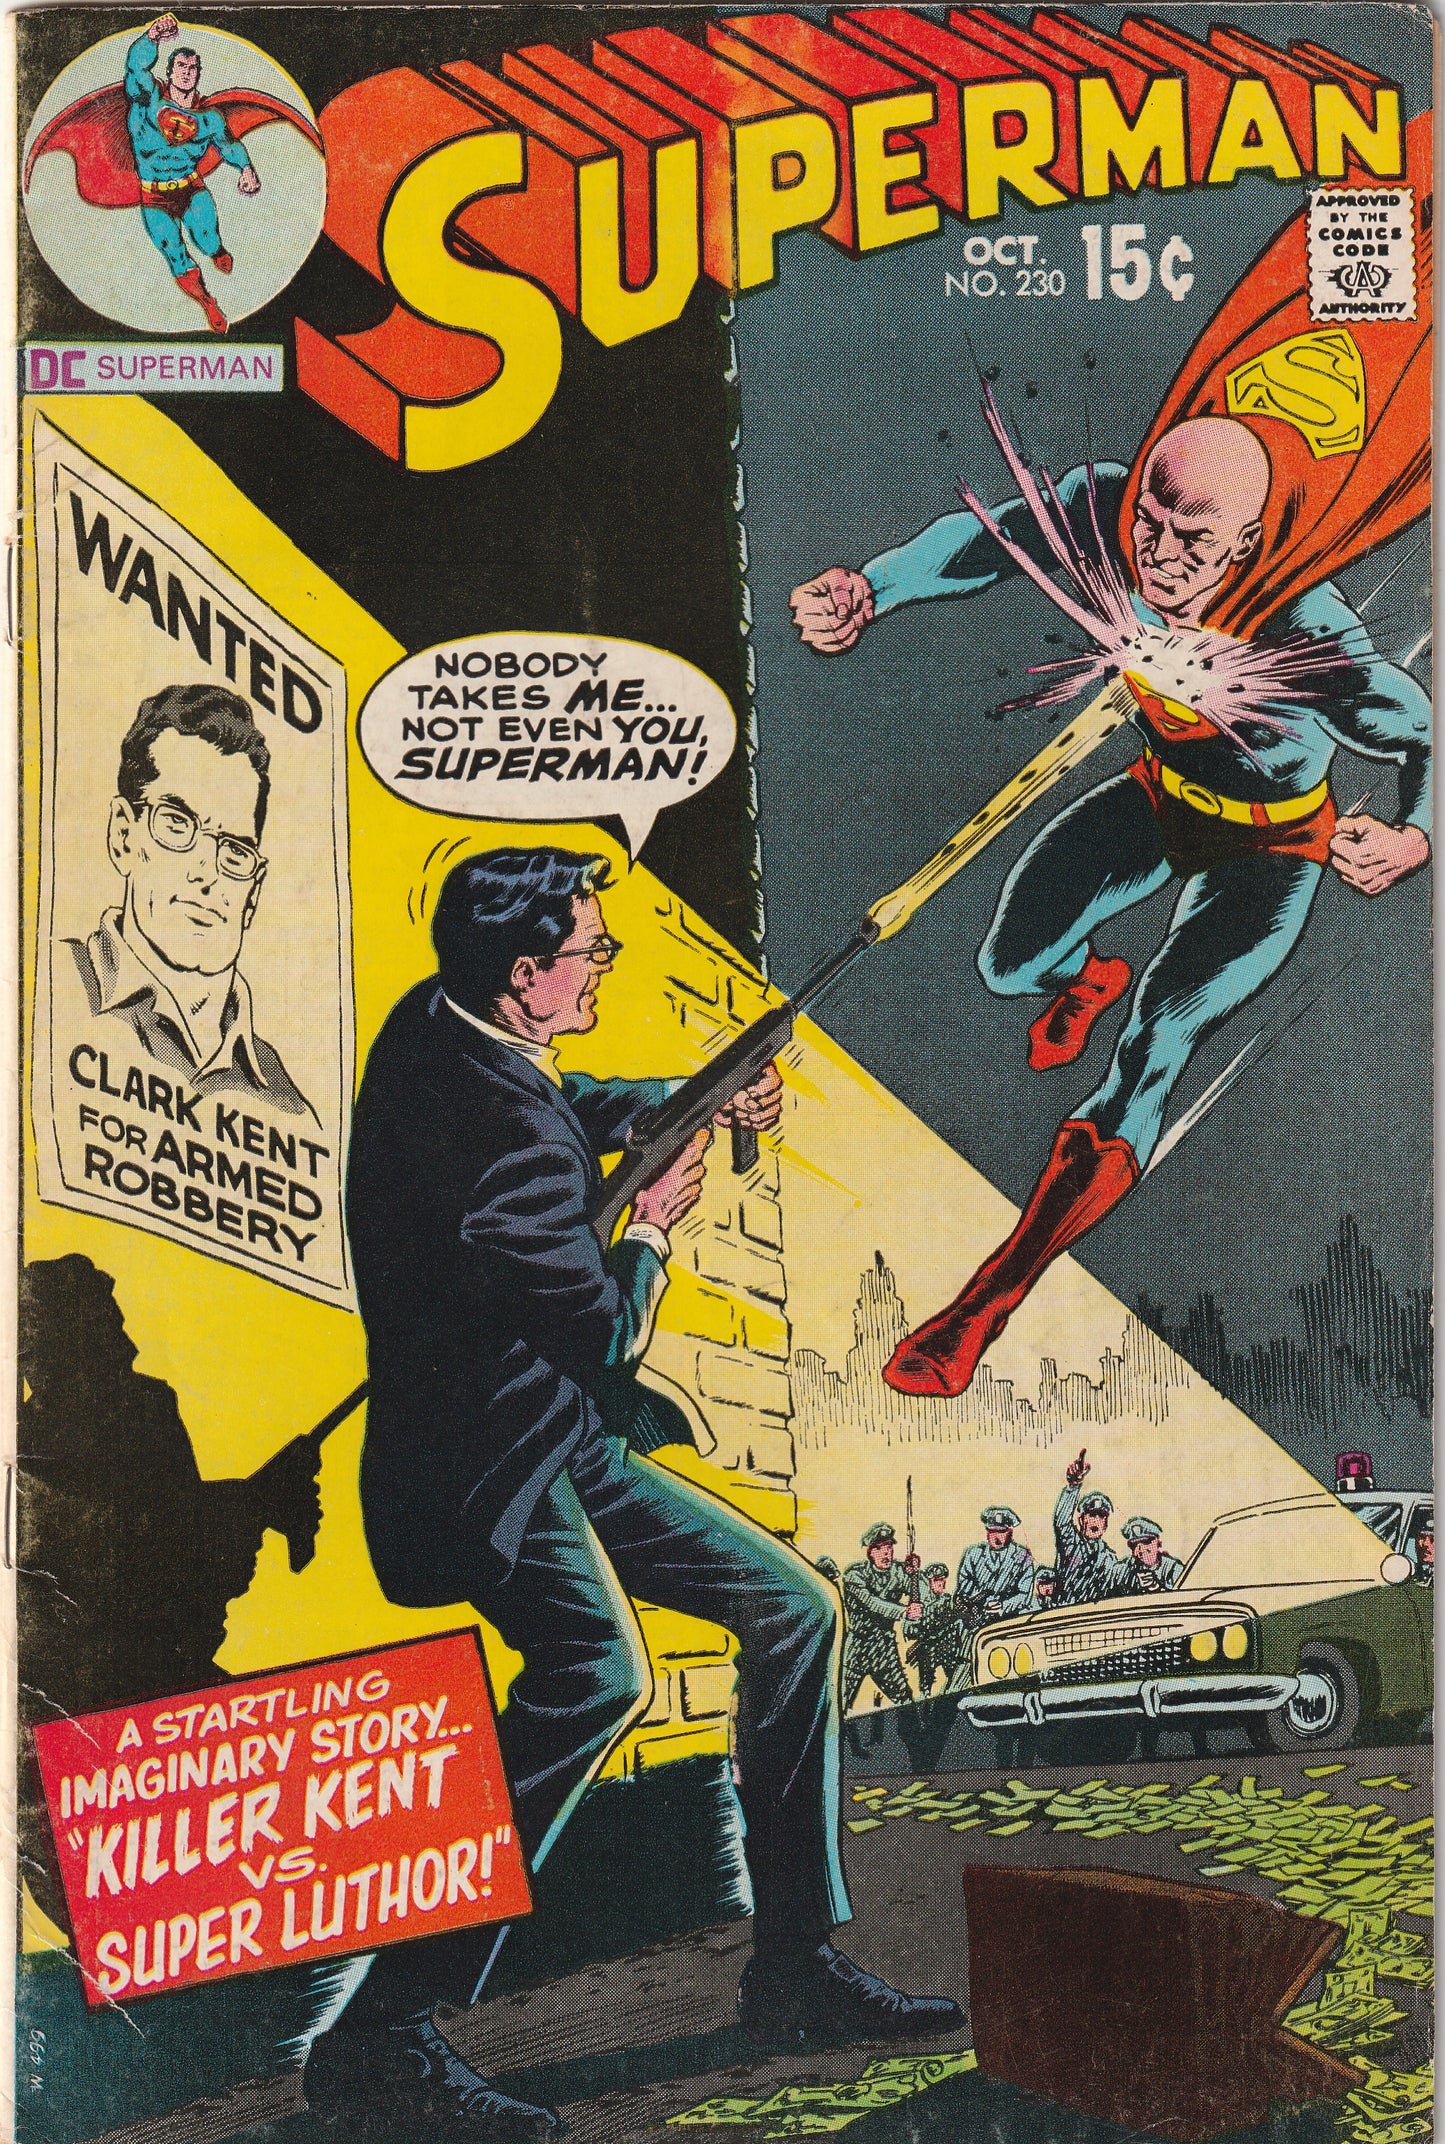 Superman #230 (1970) - Killer Kent vs Super Luthor!